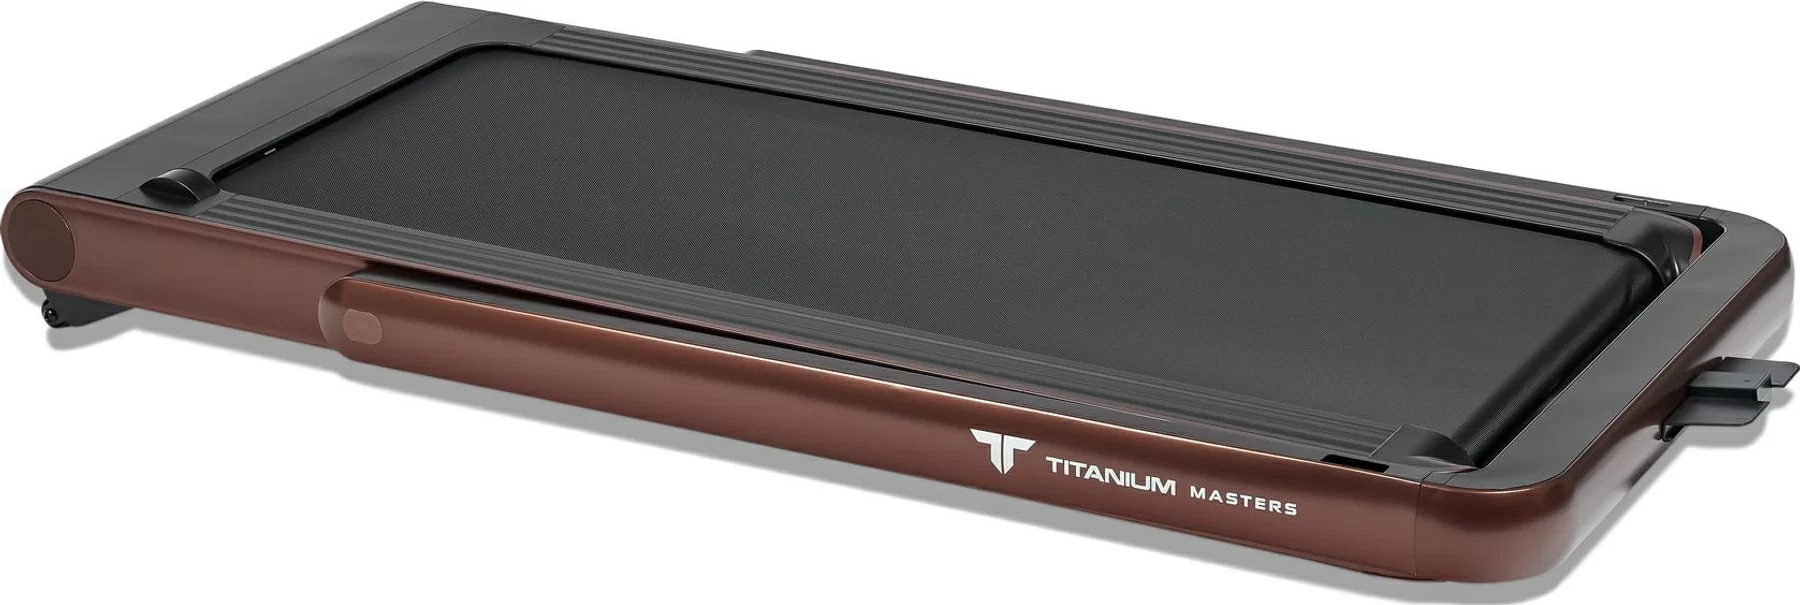 Фото Беговая дорожка Titanium Masters Slimtech C20, коричневая со склада магазина СпортЕВ